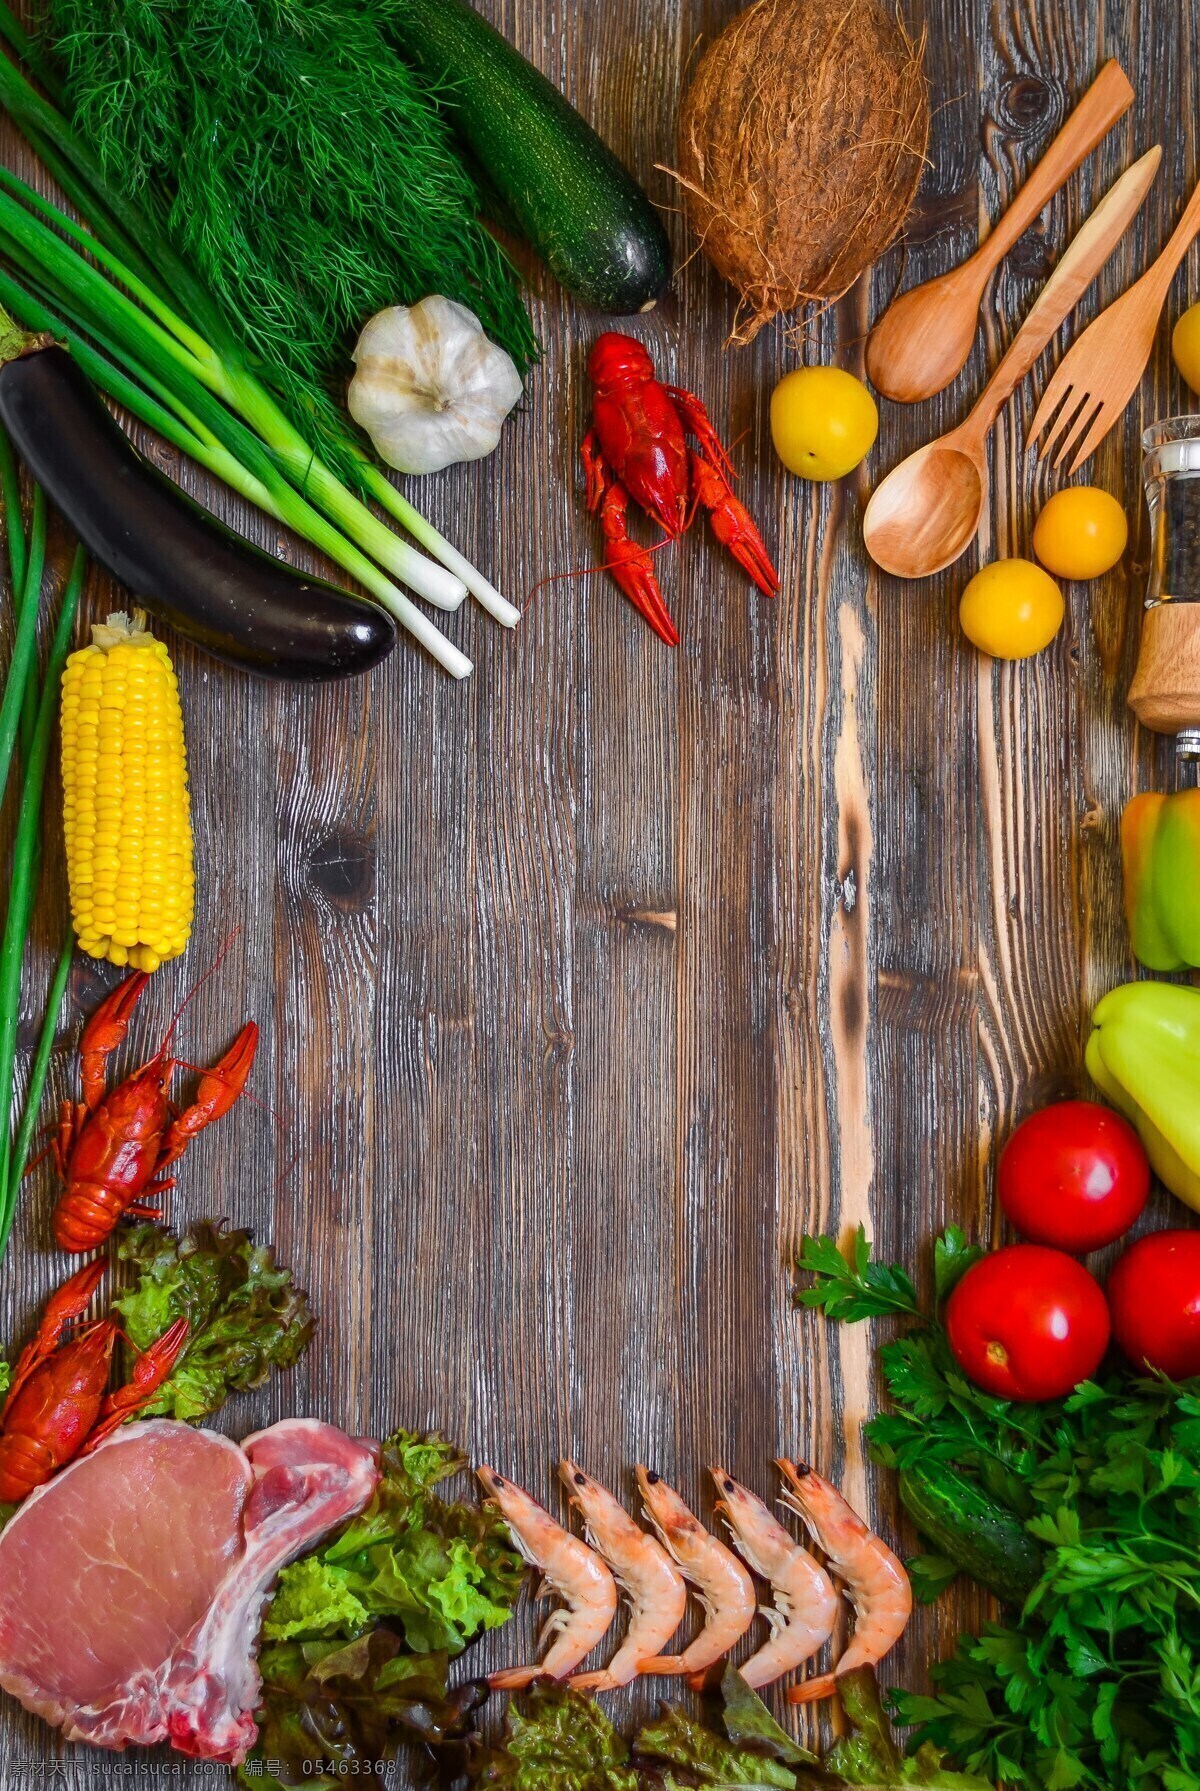 厨房 里 新鲜 食物 原料 新鲜的 食物原料 蔬菜 木板 砧板 共享图 生活百科 餐饮美食